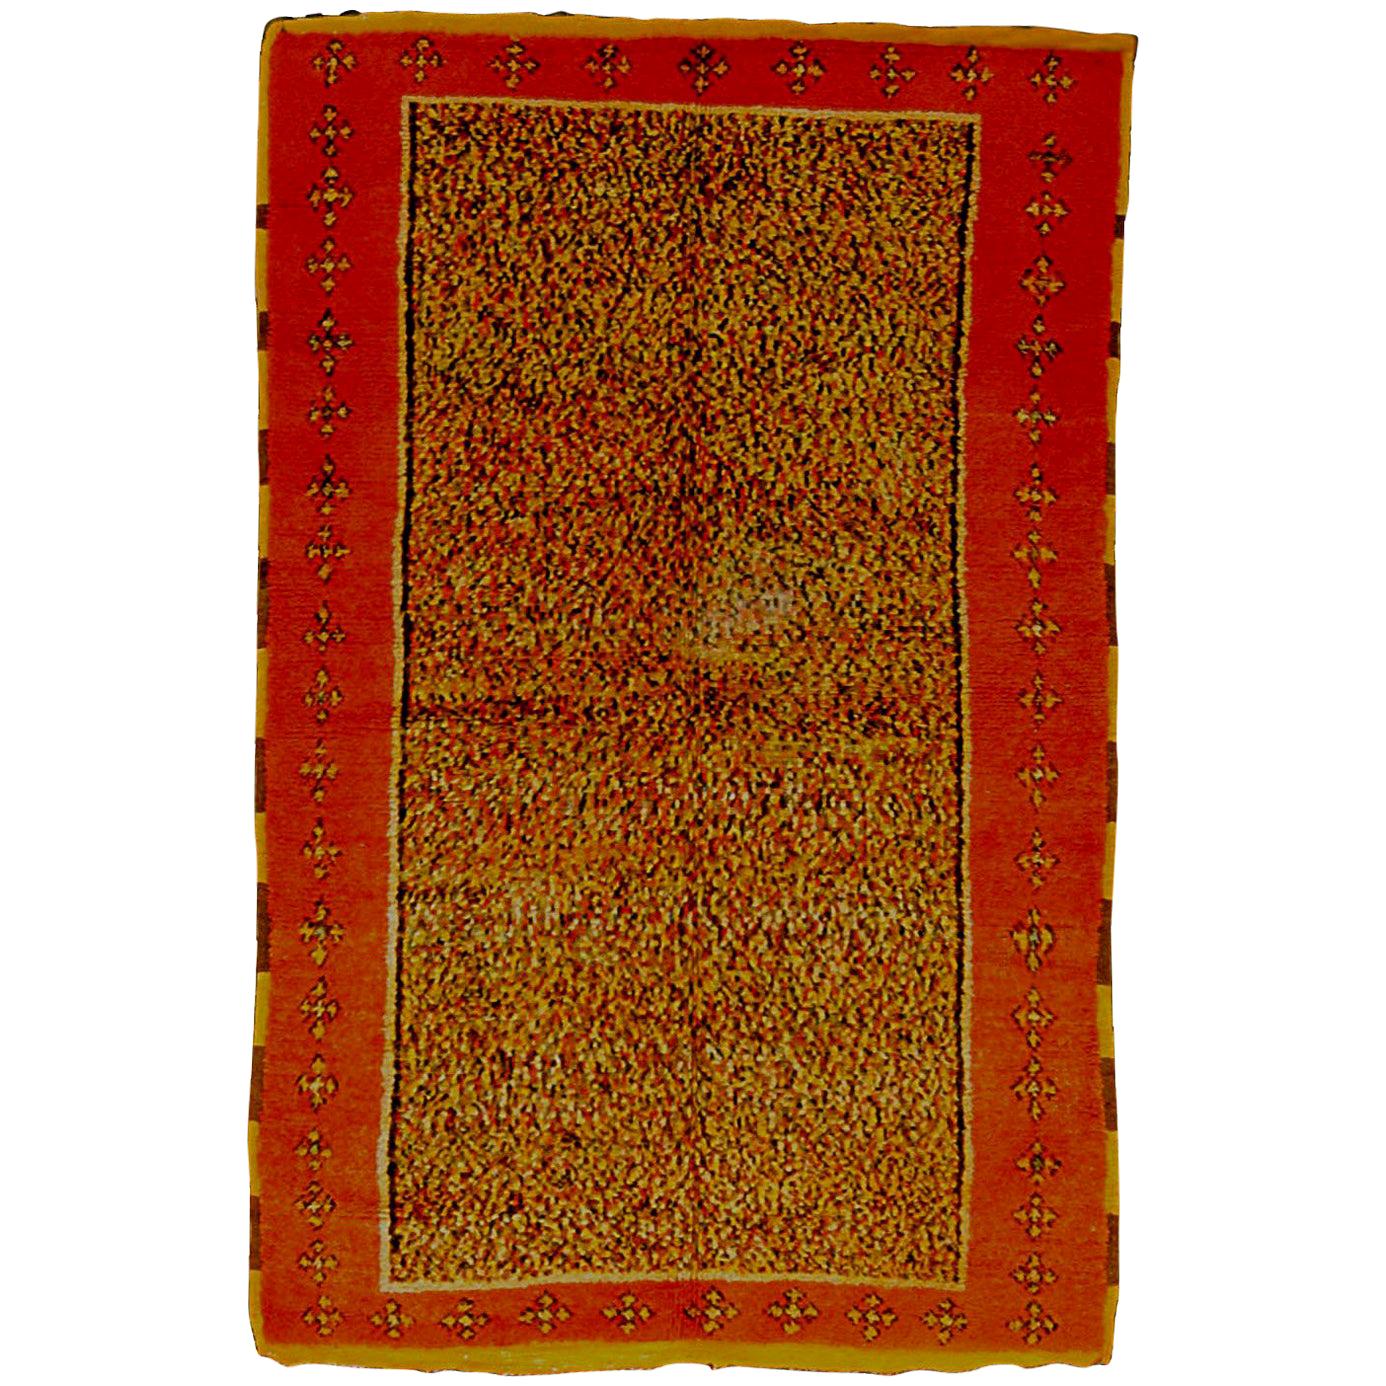 Marokkanischer mehrfarbiger Berberteppich des 20. Jahrhunderts, gelb-orangefarben